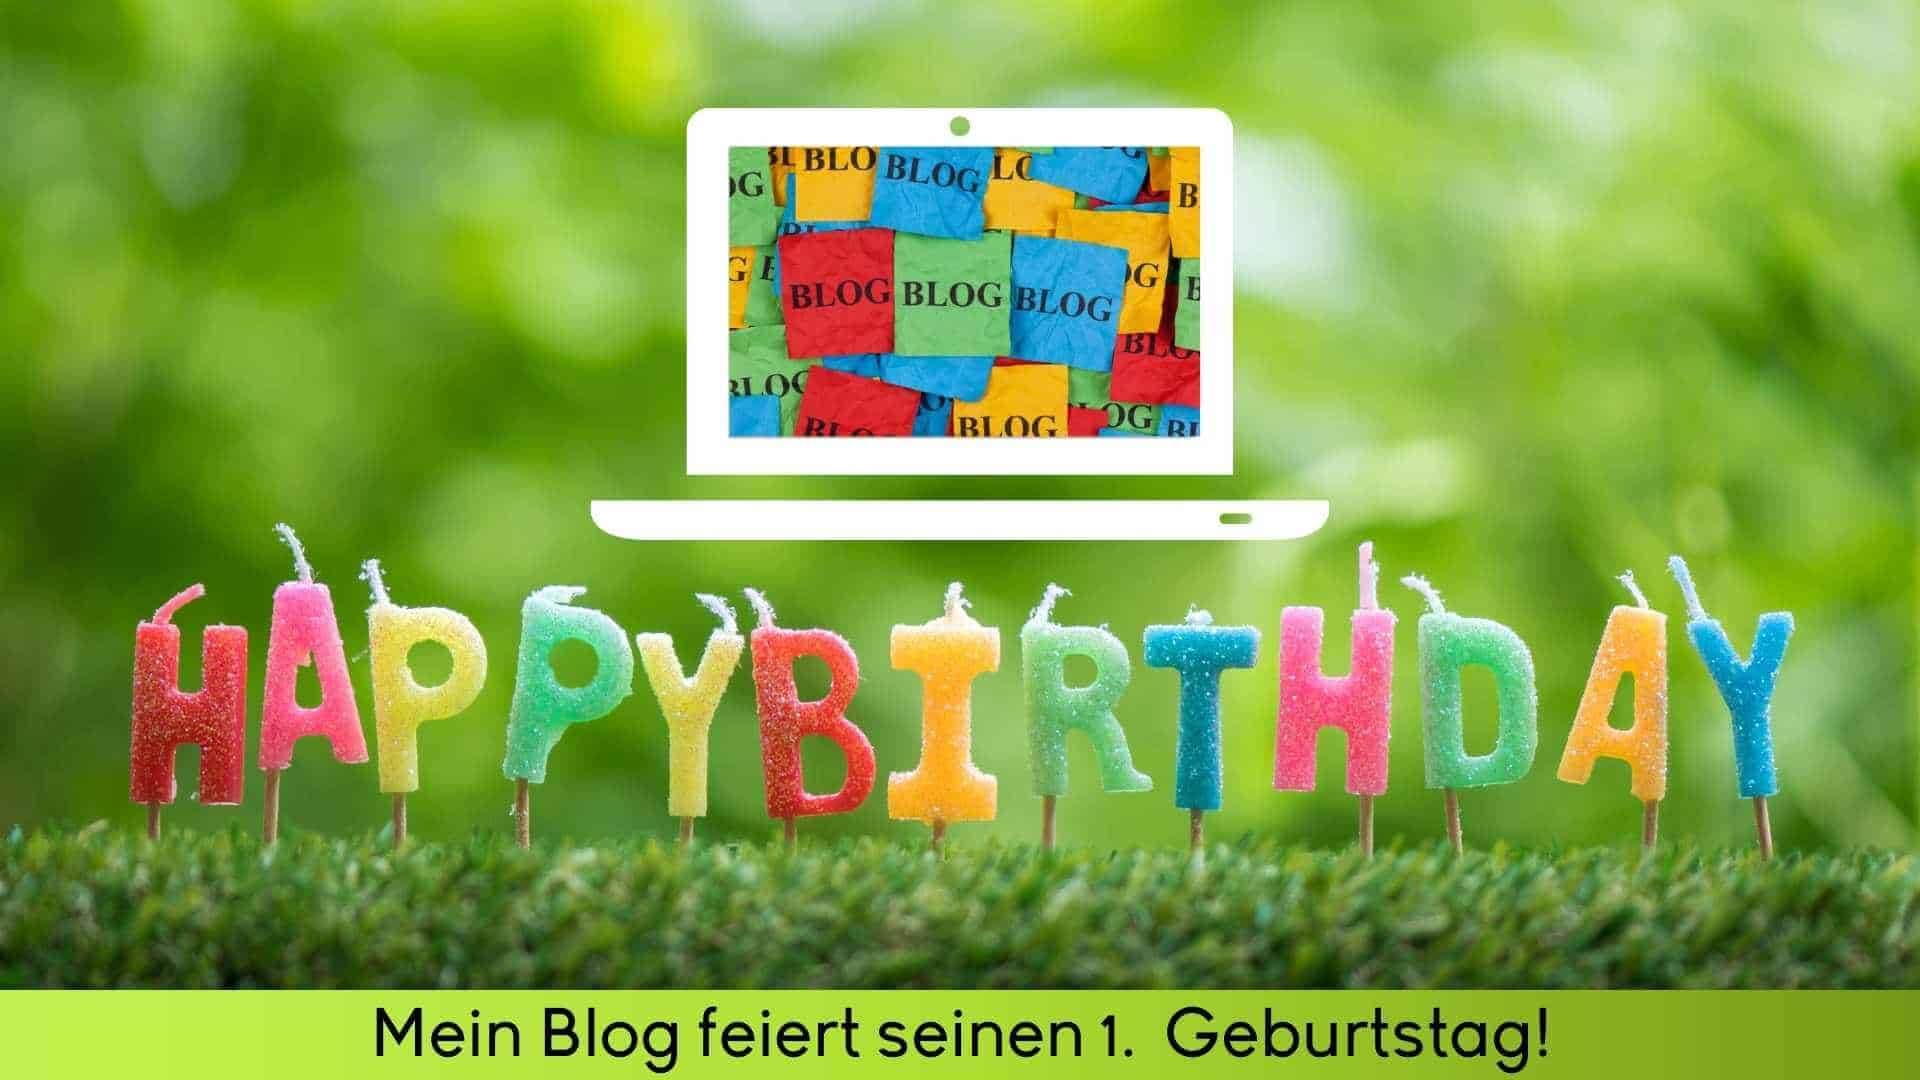 Foto in Grün mit bunten Geburtstagkerzen in Buchstalben Happy Birthday und darüber ein Laptop mit bunten Stickern wo Blog drauf steht.